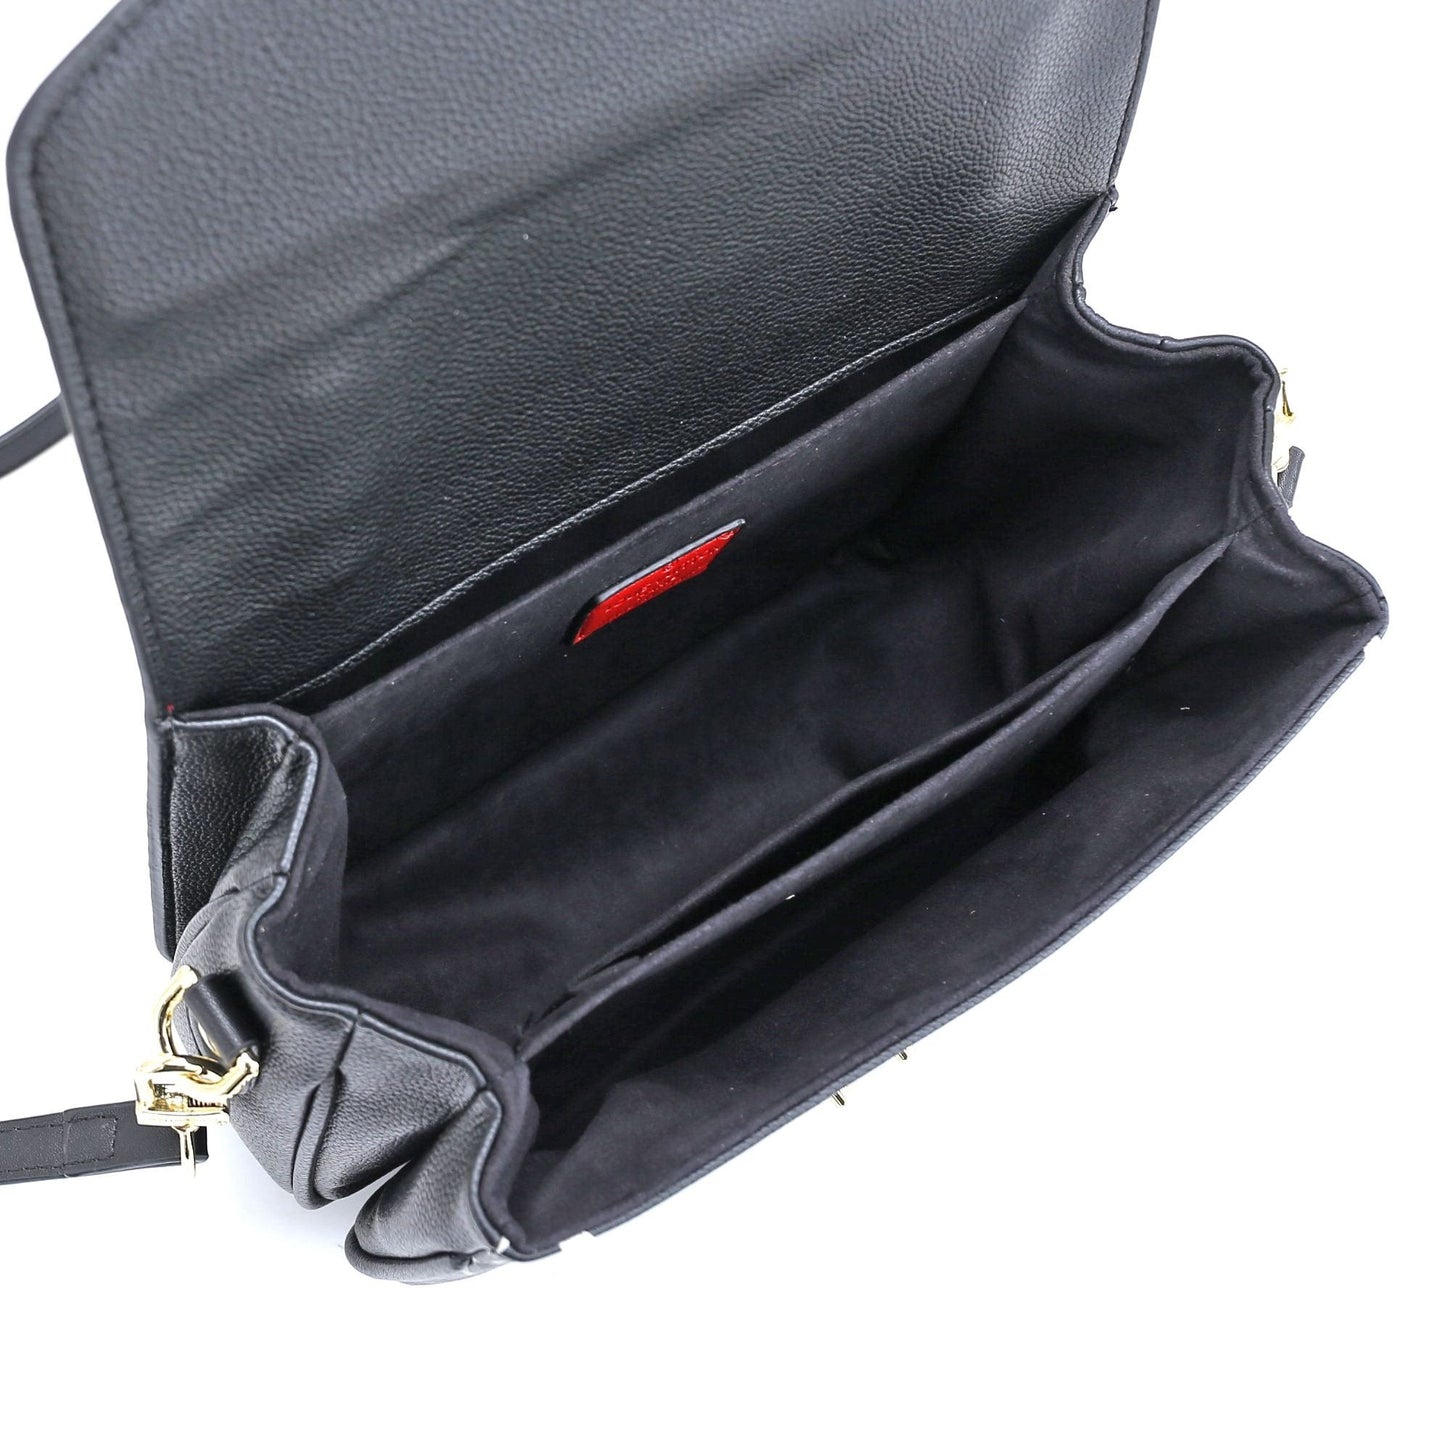 VO - AF Handbags LUV 041